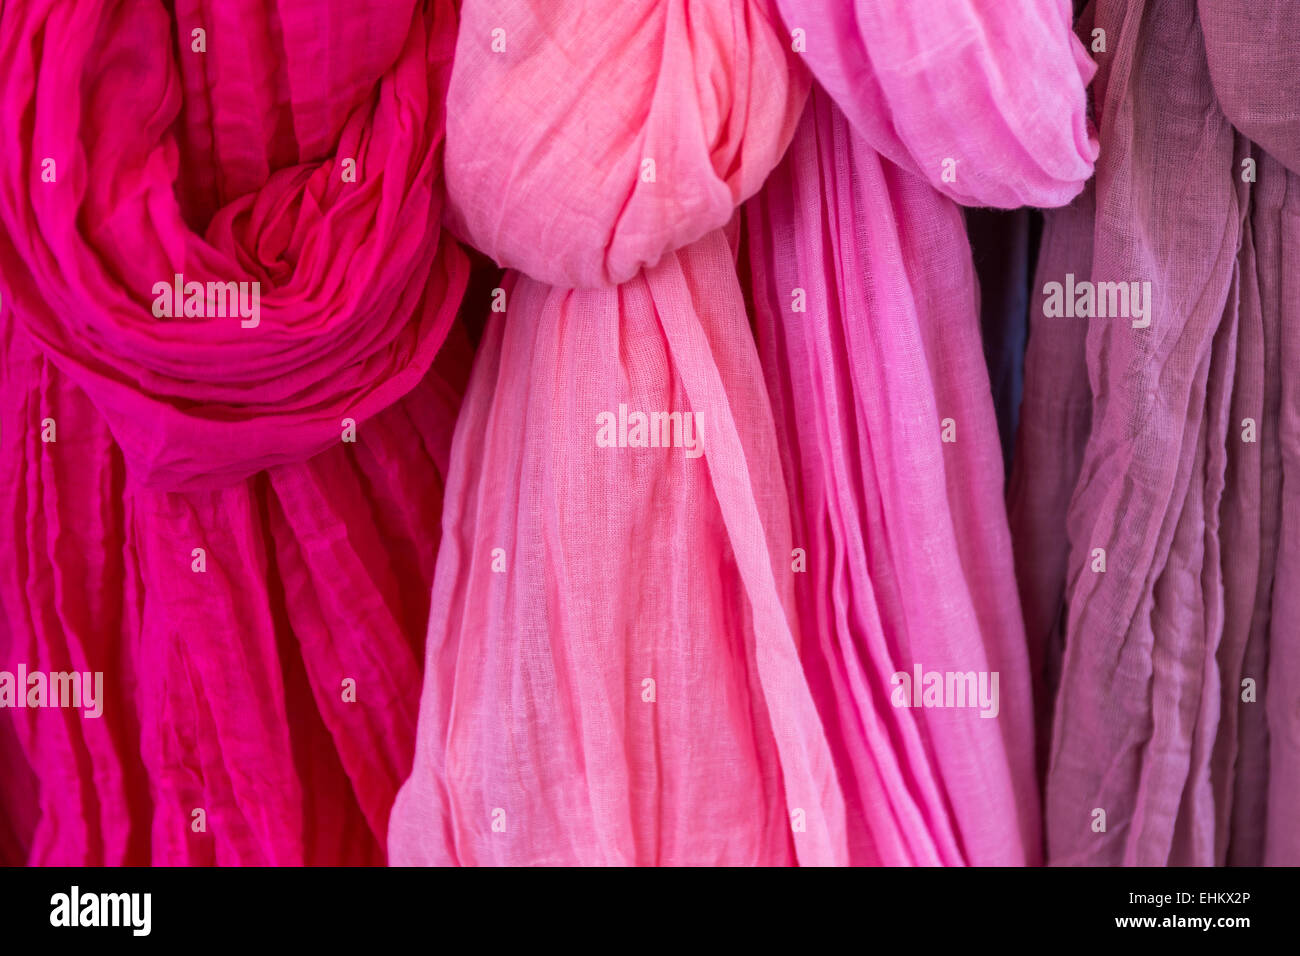 Sélection de diverses variables en foulards roses, pourpres et magenta Banque D'Images